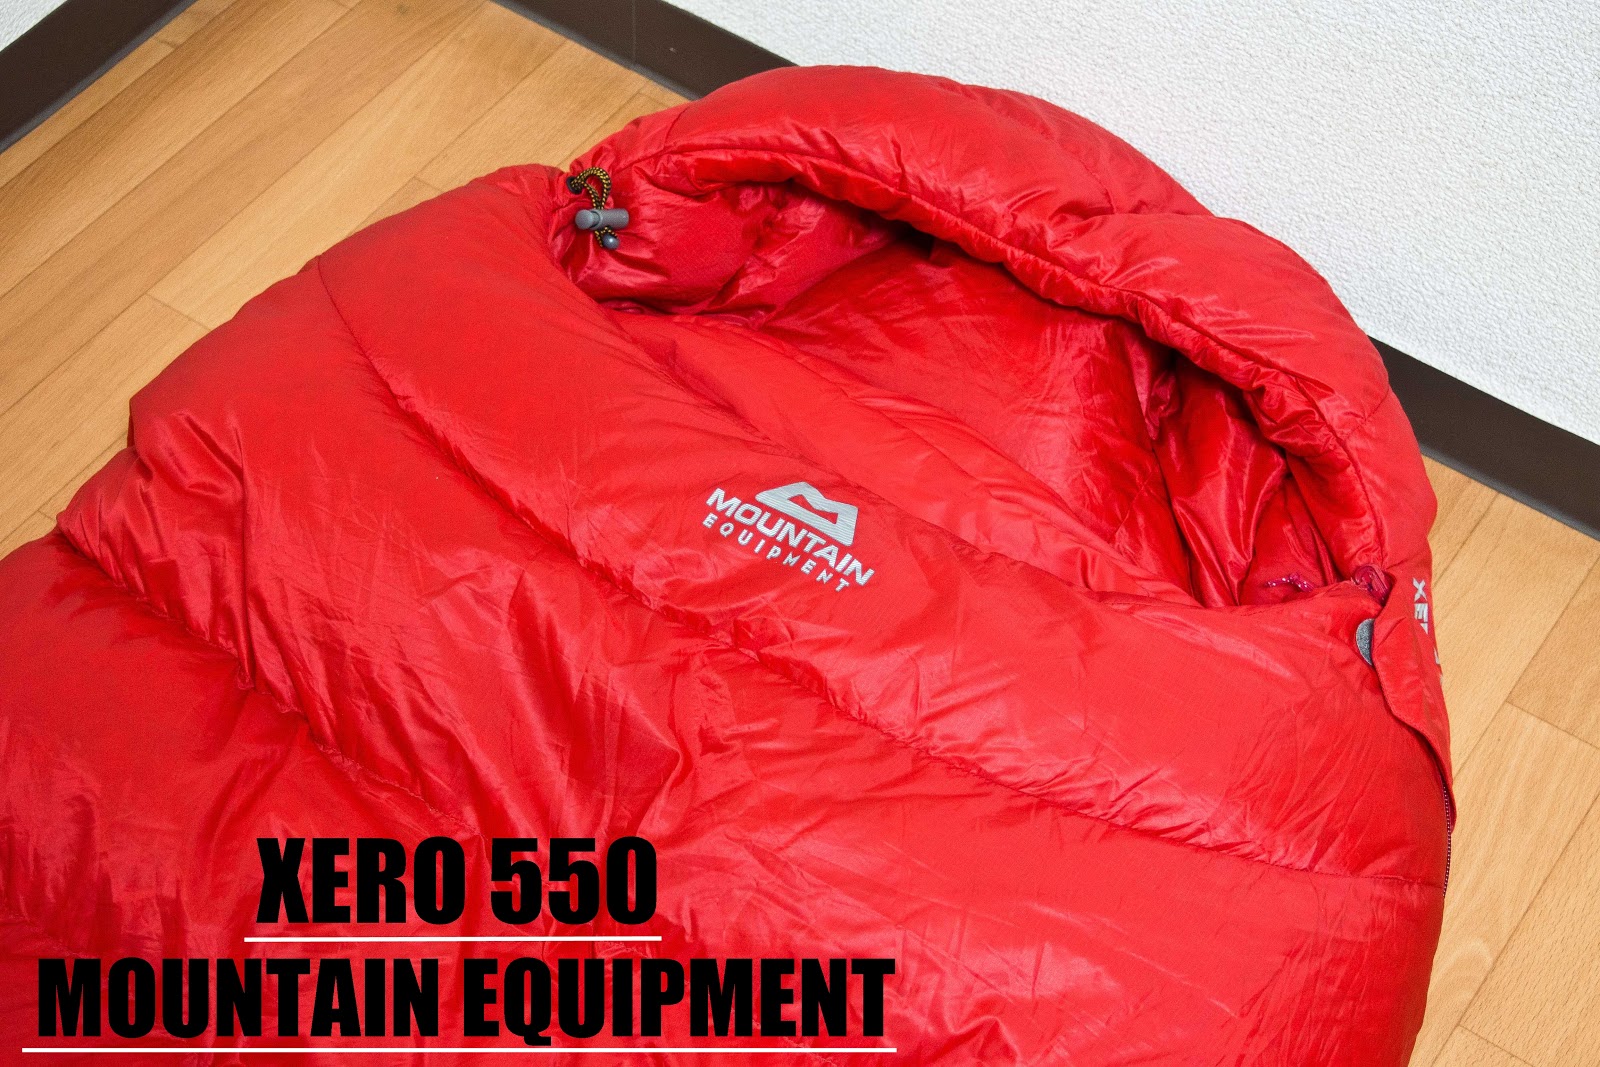 1/f ゆらぎ: マウンテン イクイップメント XERO550 レビュー (Mountain